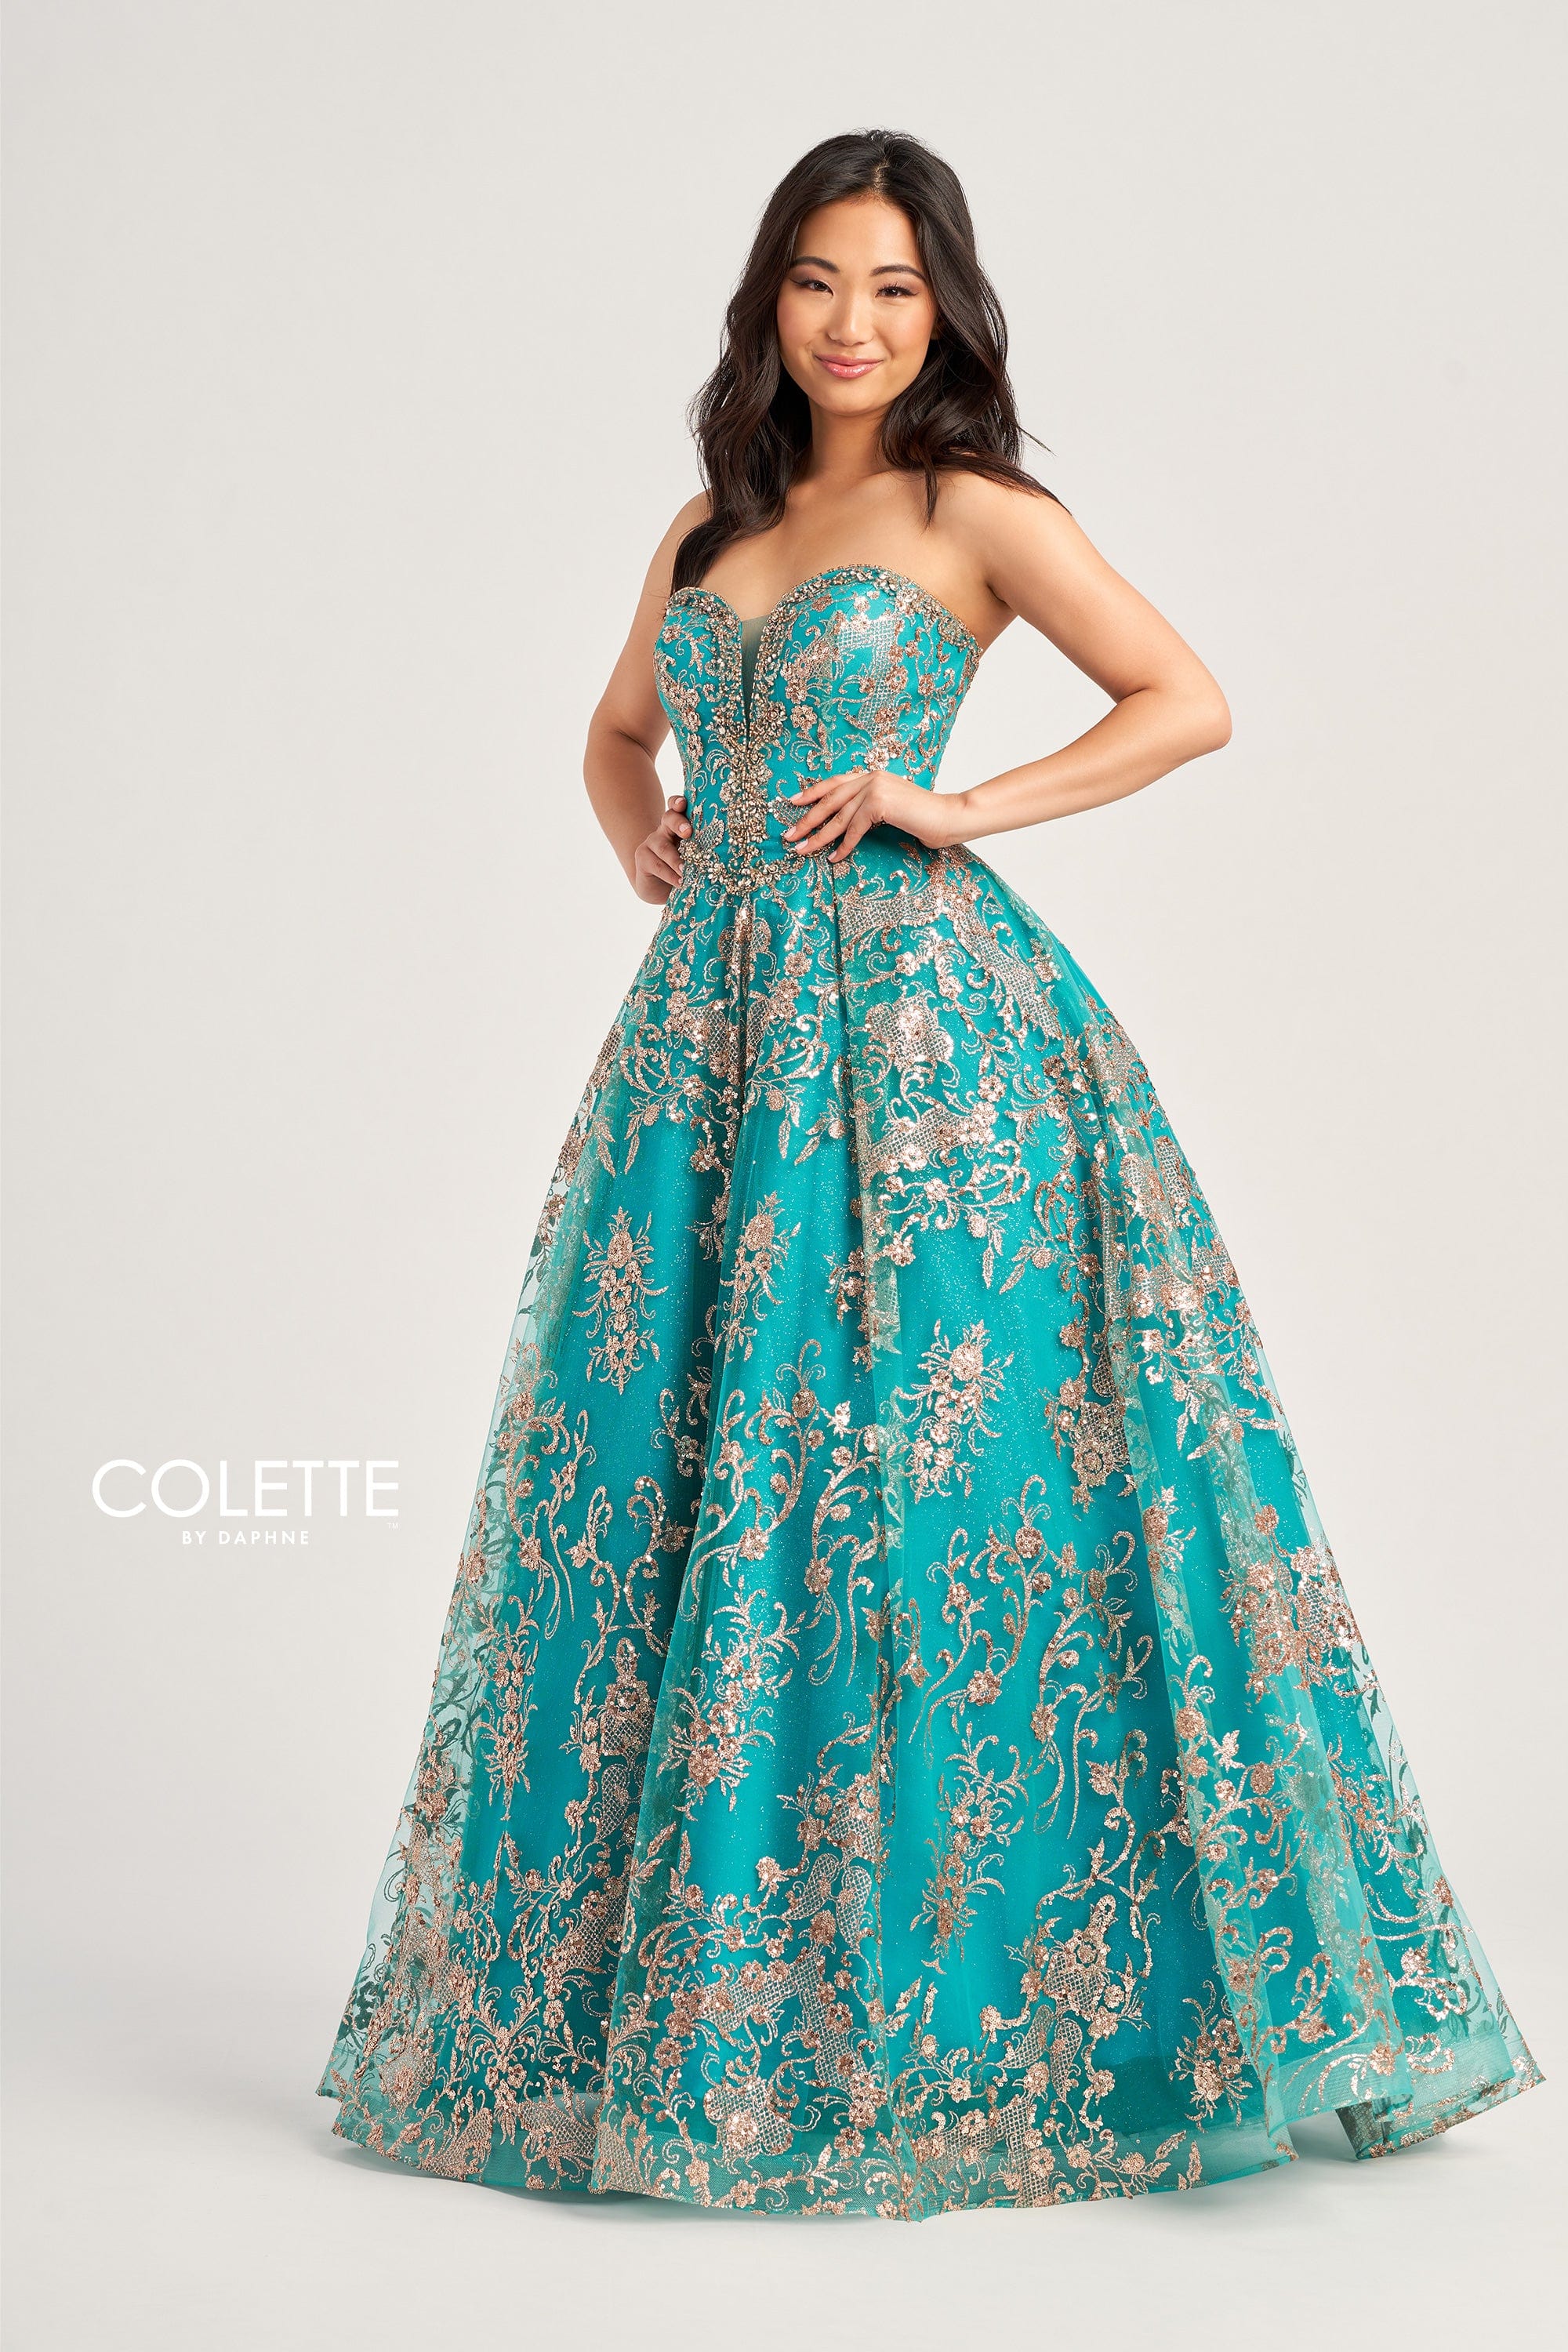 Colette for Mon Cheri Prom Colette: CL5101